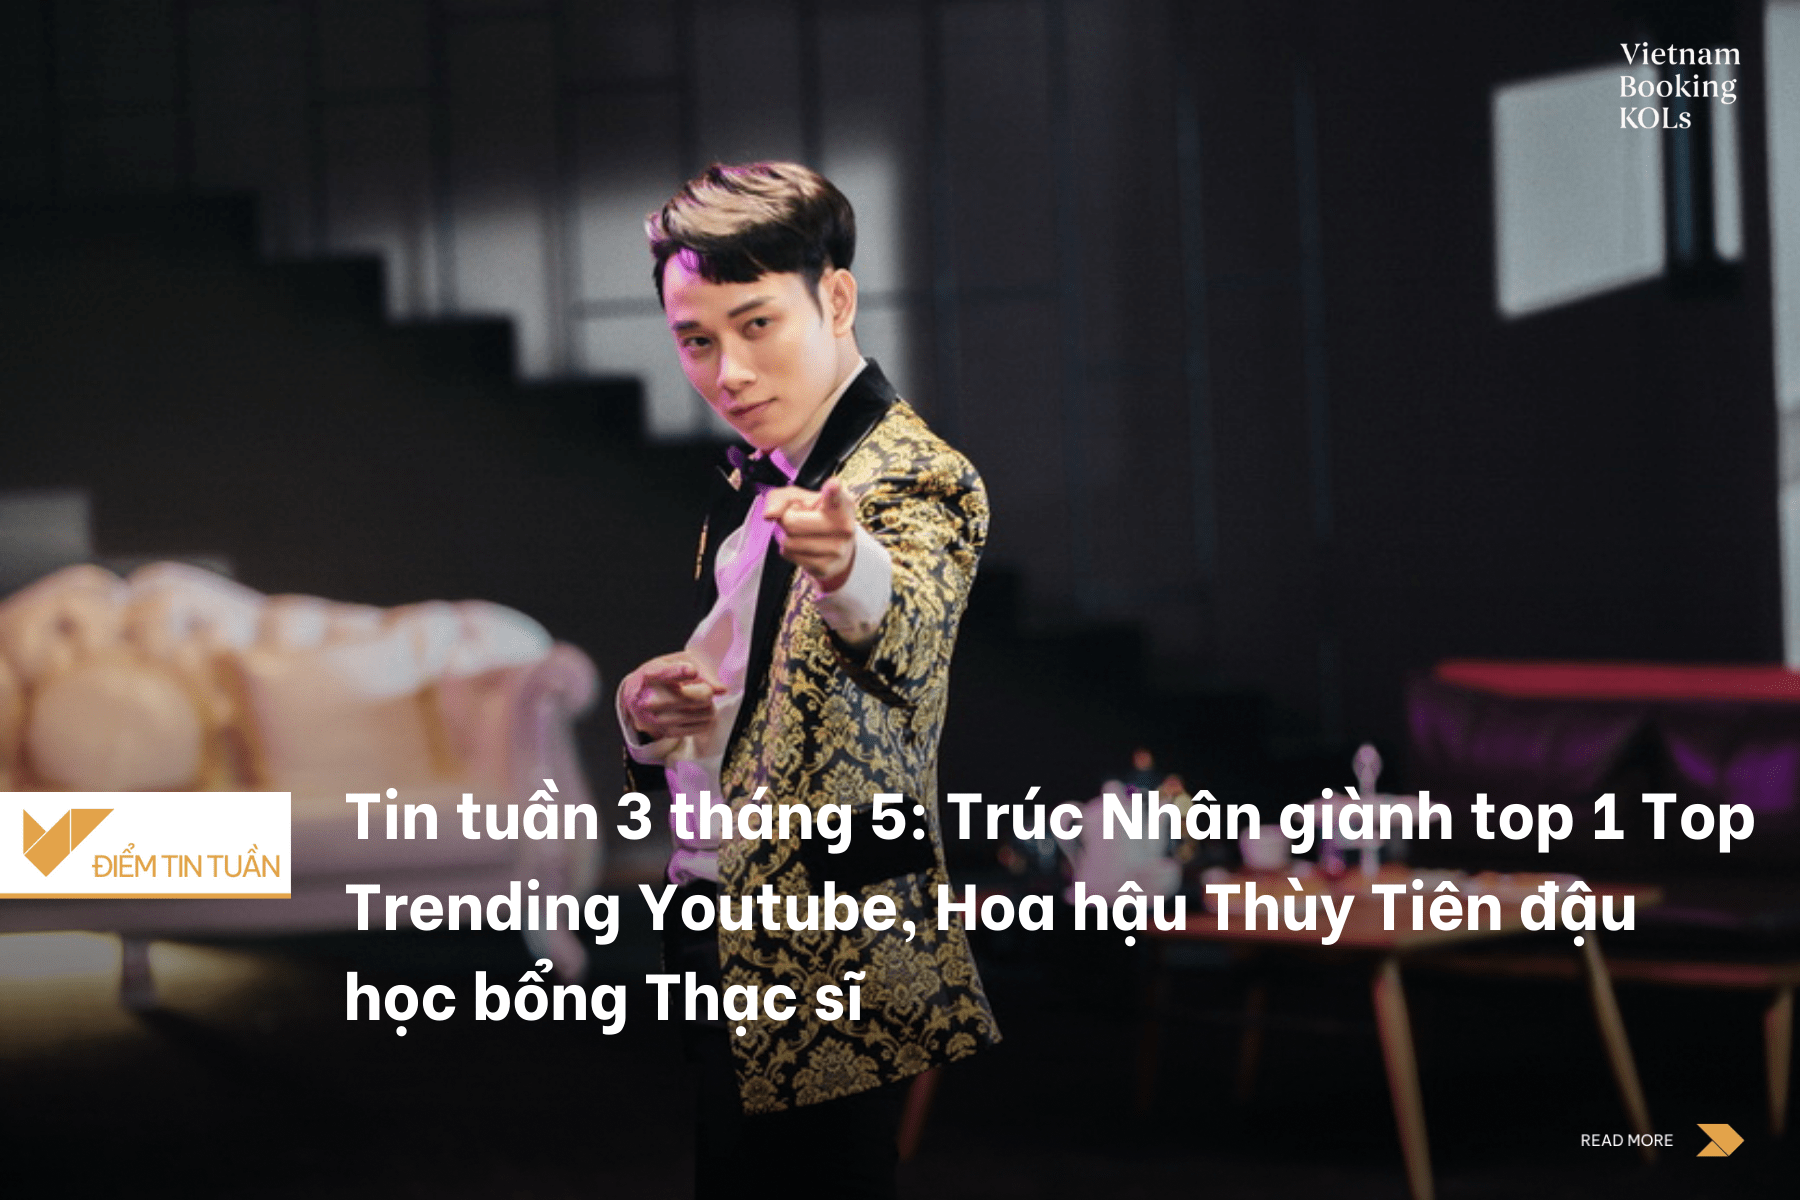 Tin tuần 3 tháng 5: Trúc Nhân giành top 1 Top Trending Youtube, Hoa hậu Thùy Tiên đậu học bổng Thạc sĩ